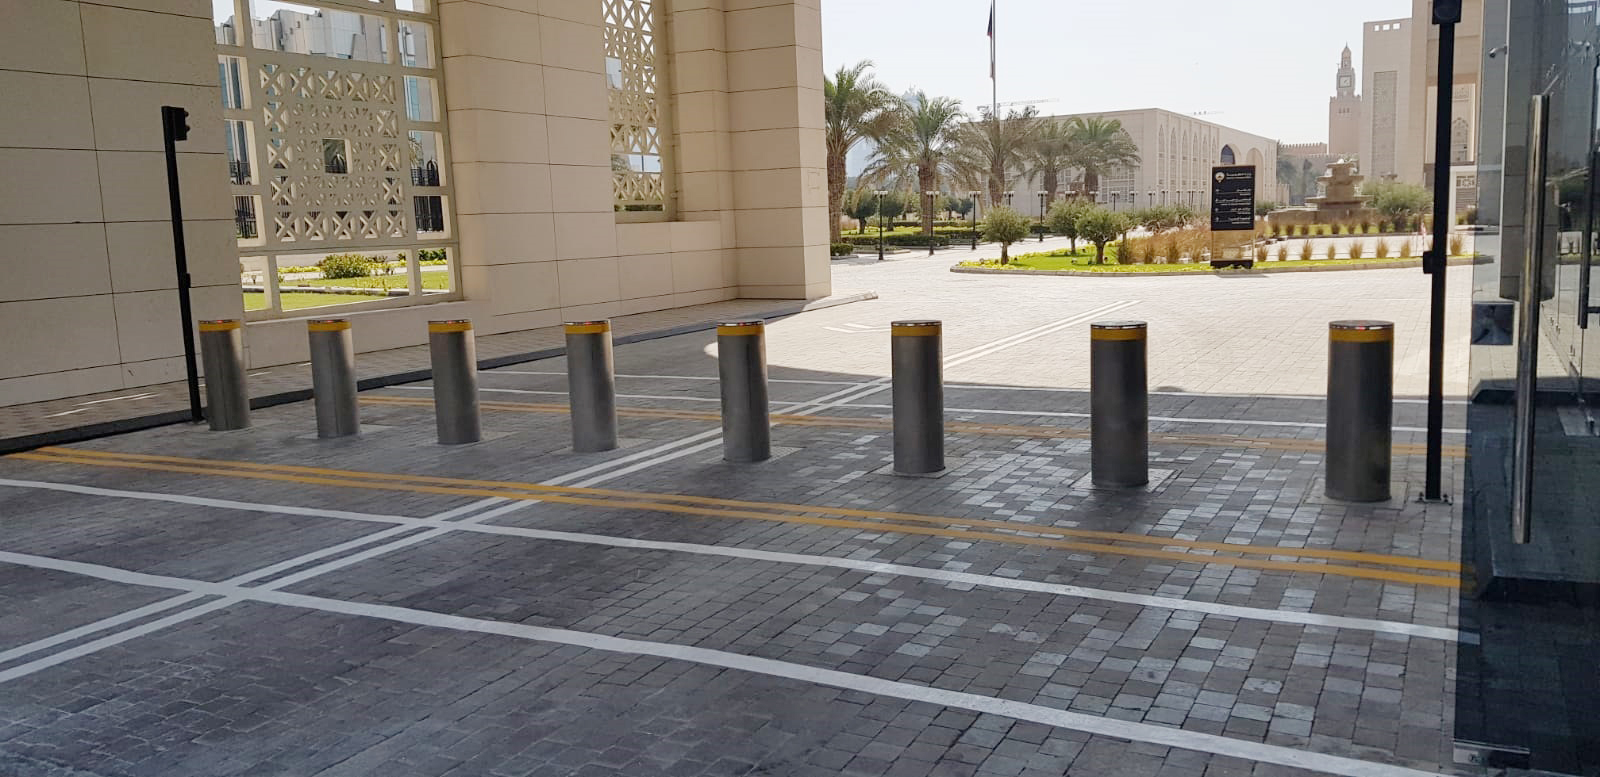 Postes de amarração automáticos de tráfego, Ministério das Relações Exteriores, Kuwait